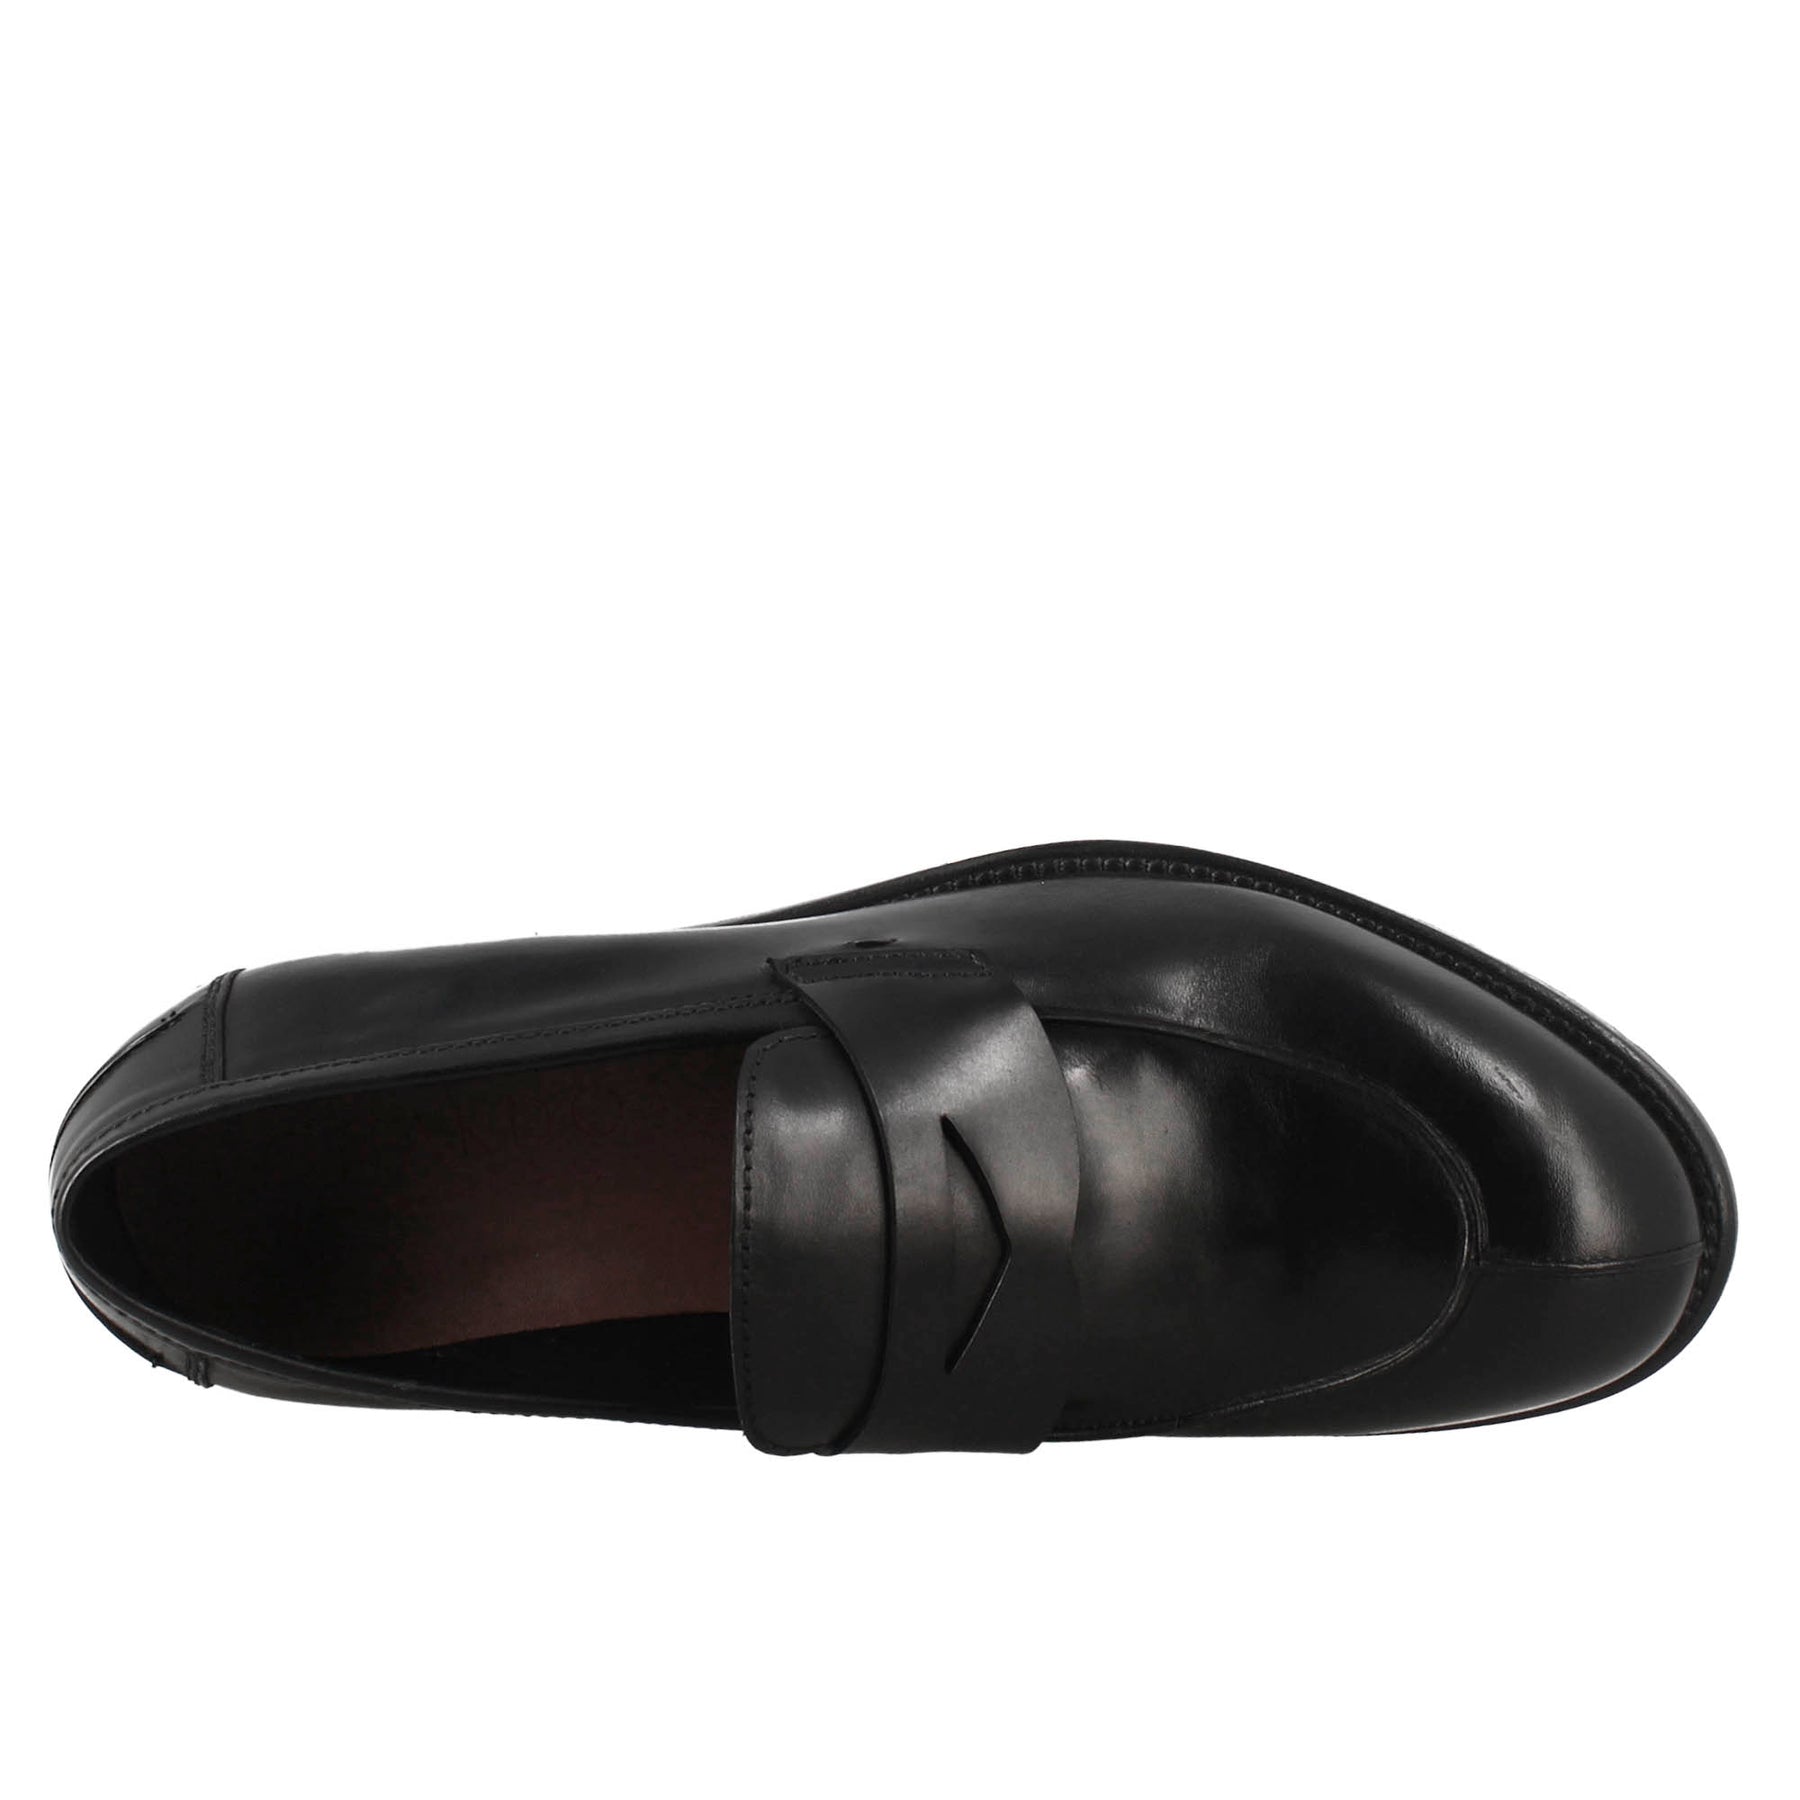 Men's elegant vintage black moccasin in smooth leather